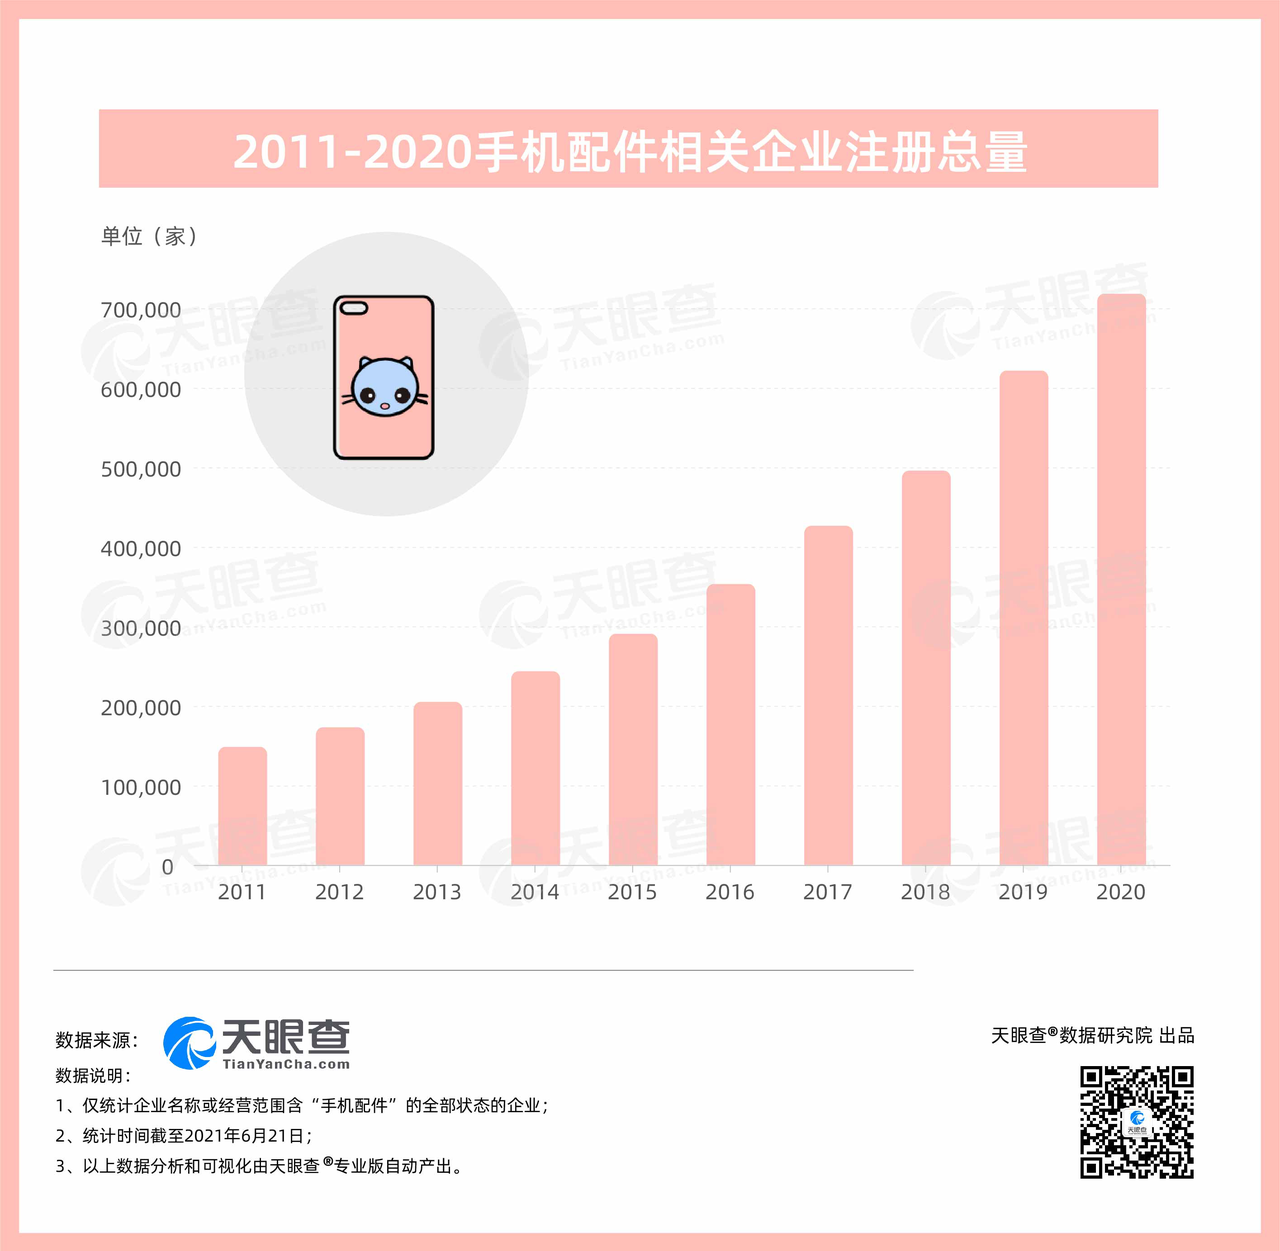 金年会金字招牌信誉至上手机配件行业成长空间巨大目前全国有近49万家手机配件相关企(图1)